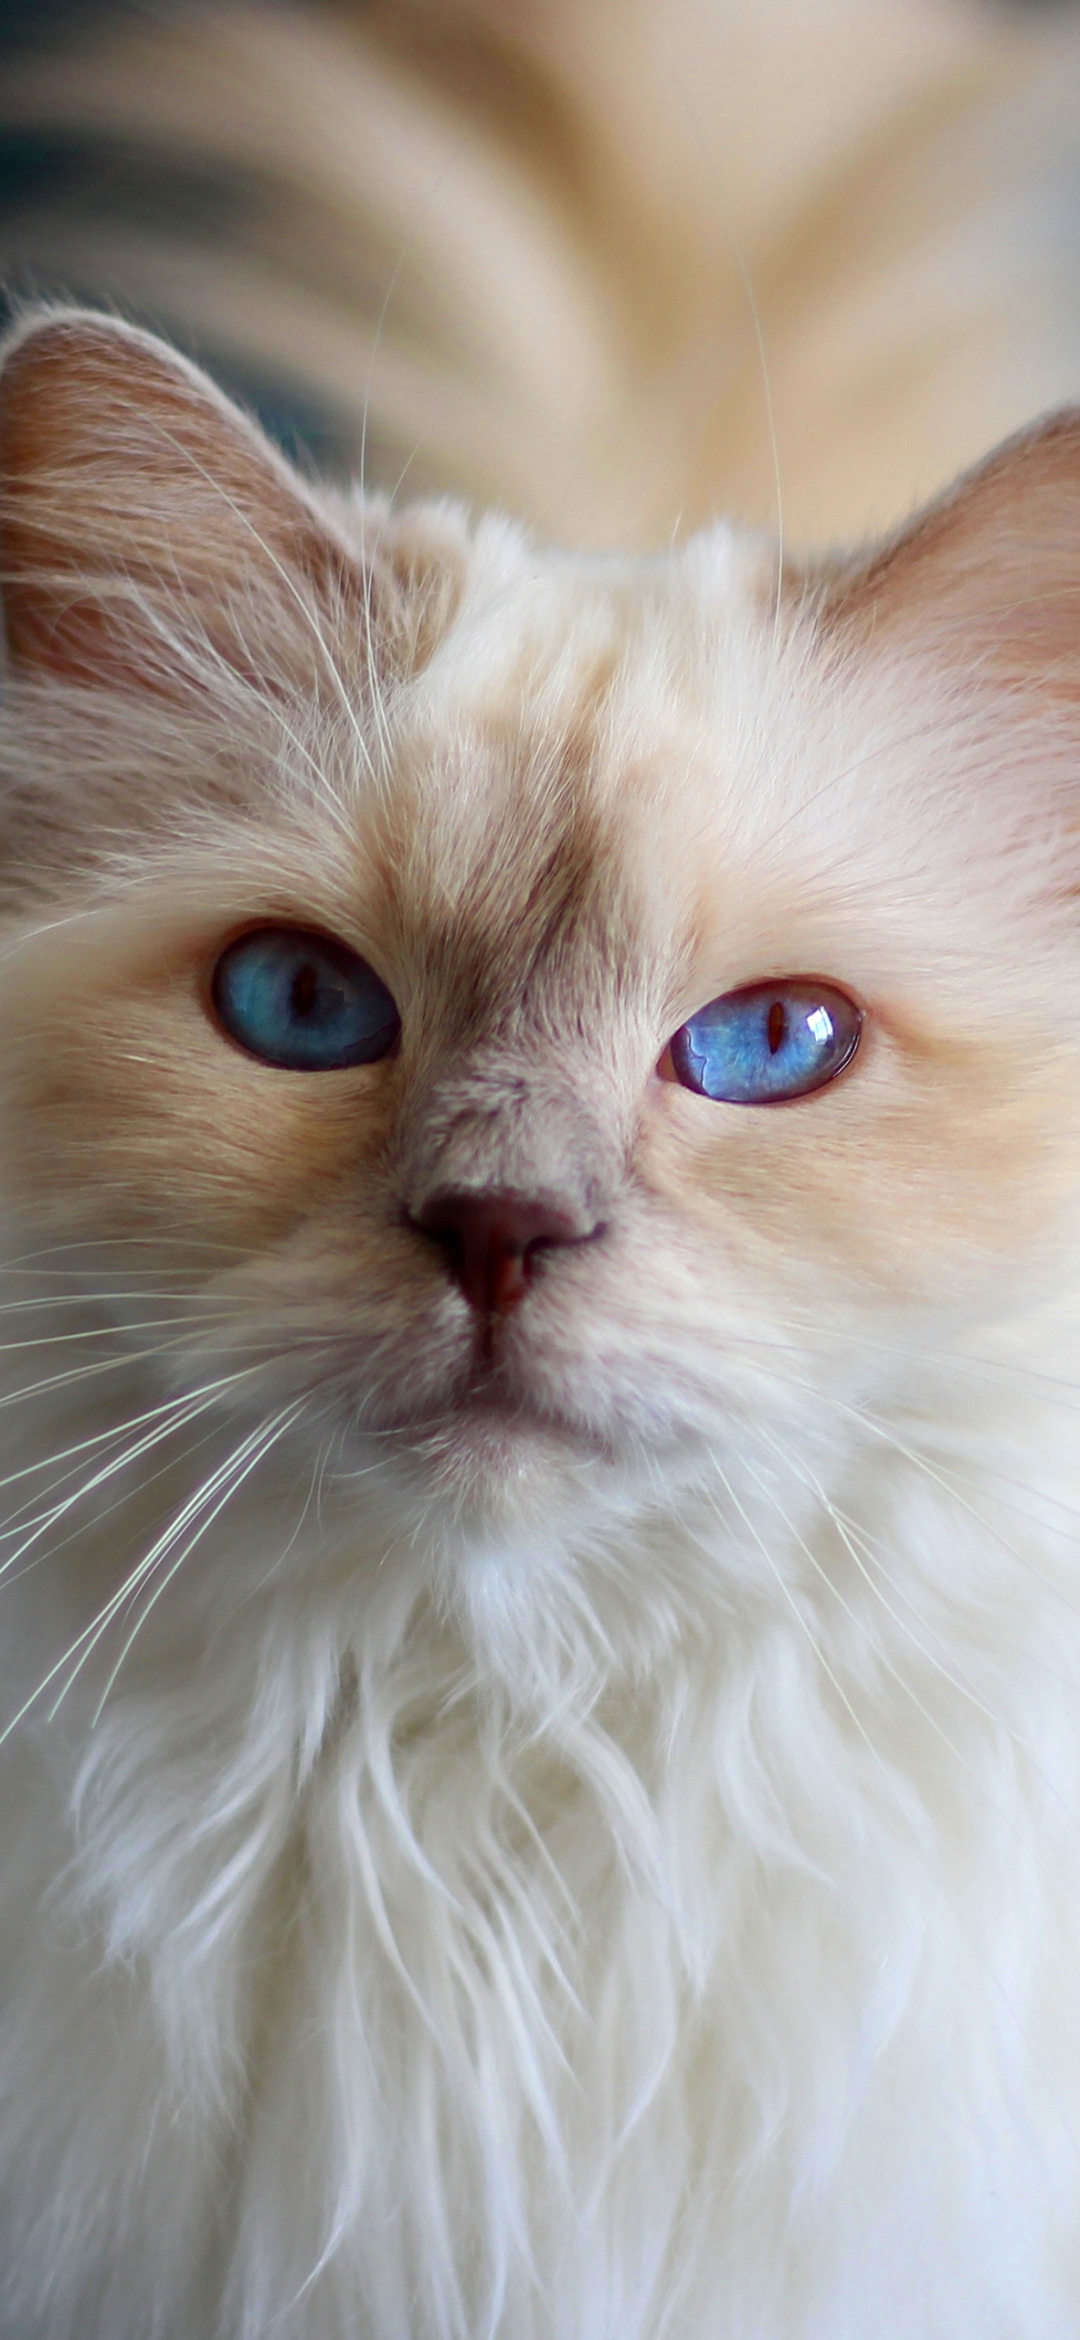 Descarga gratuita de fondo de pantalla para móvil de Animales, Gatos, Gato, Muñeca De Trapo.